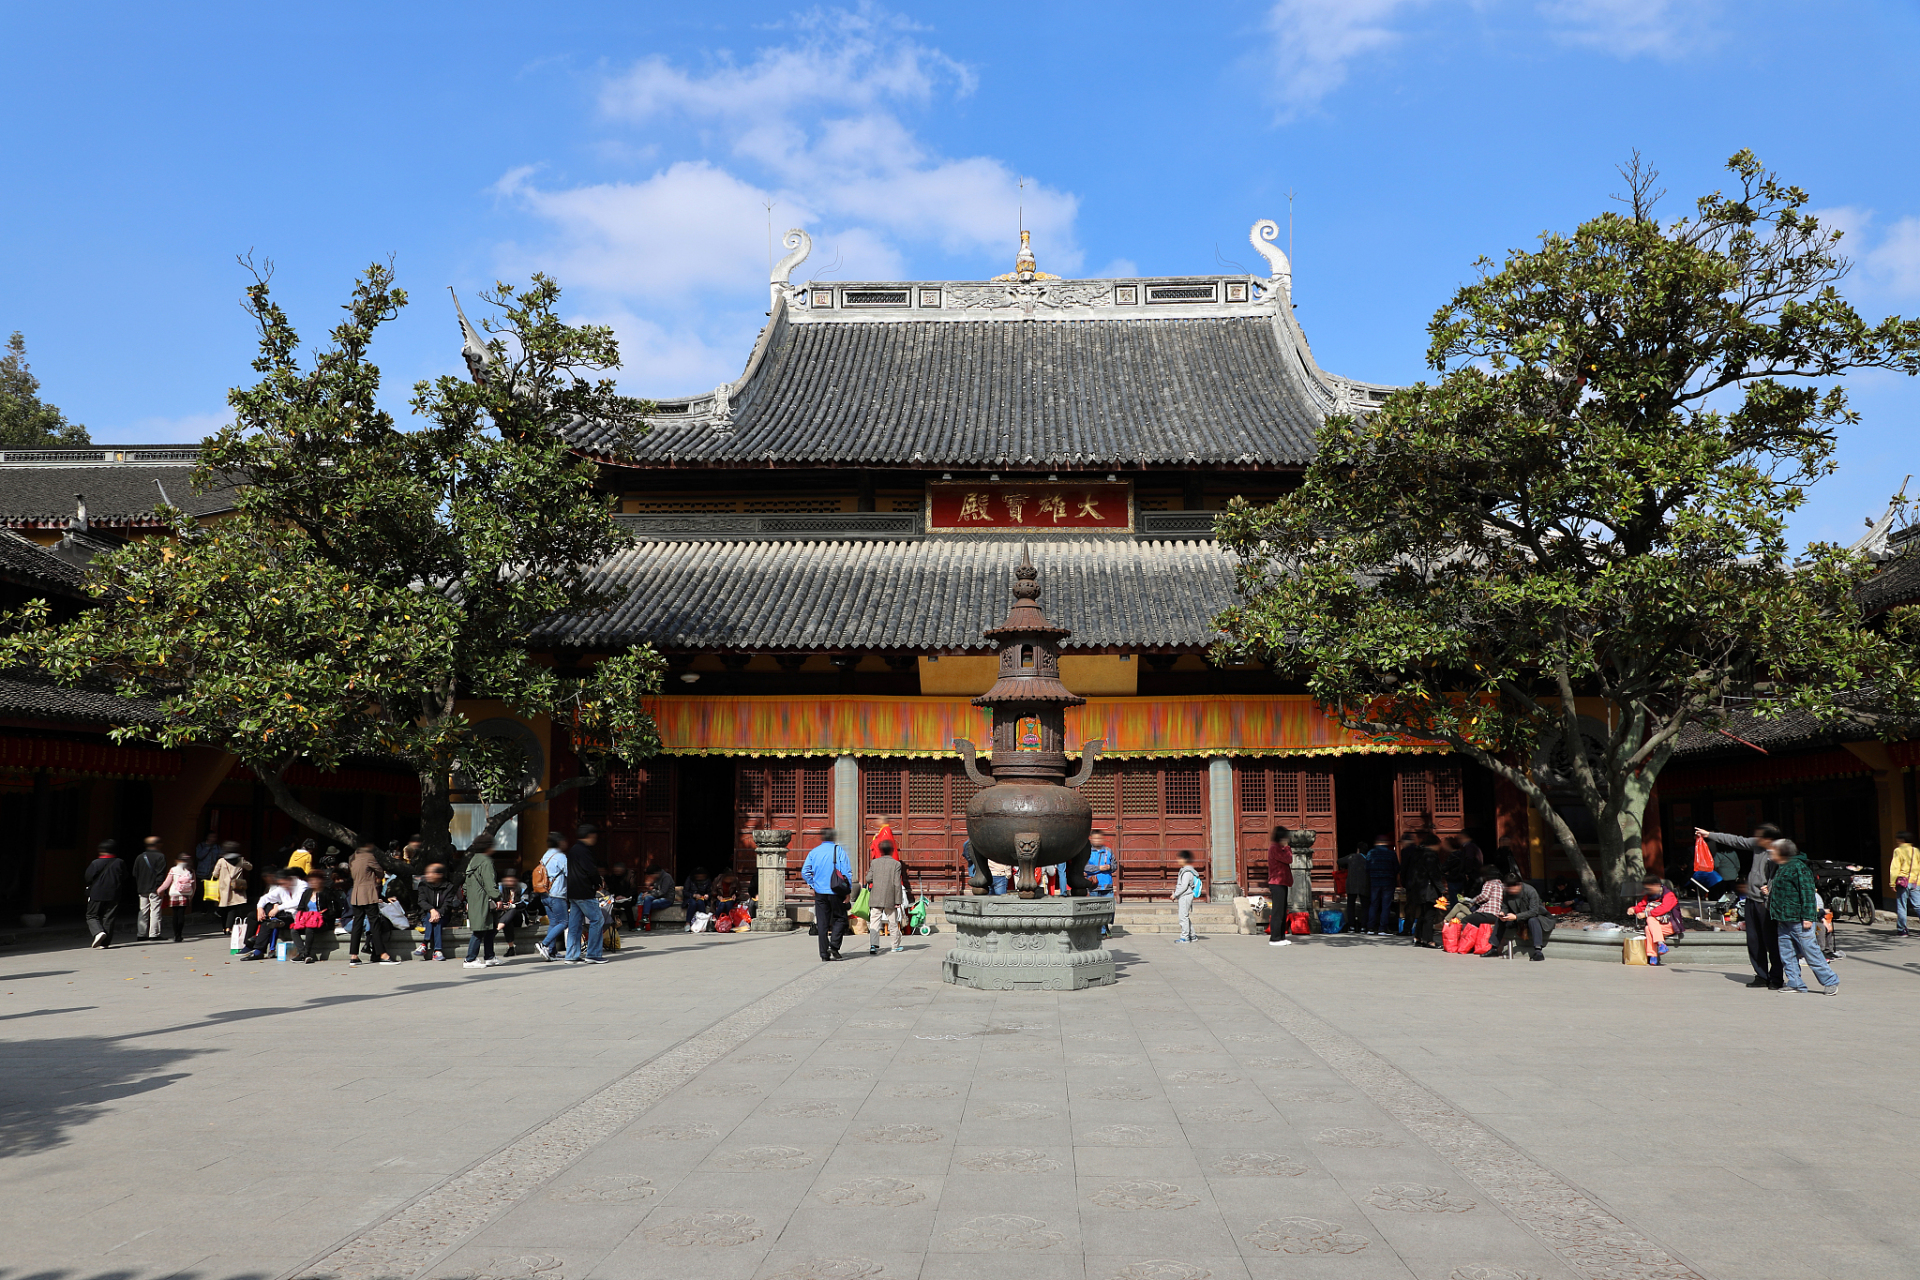 龙华寺,这座位于上海南部龙华西路上的佛教古刹,是上海地区历史最悠久